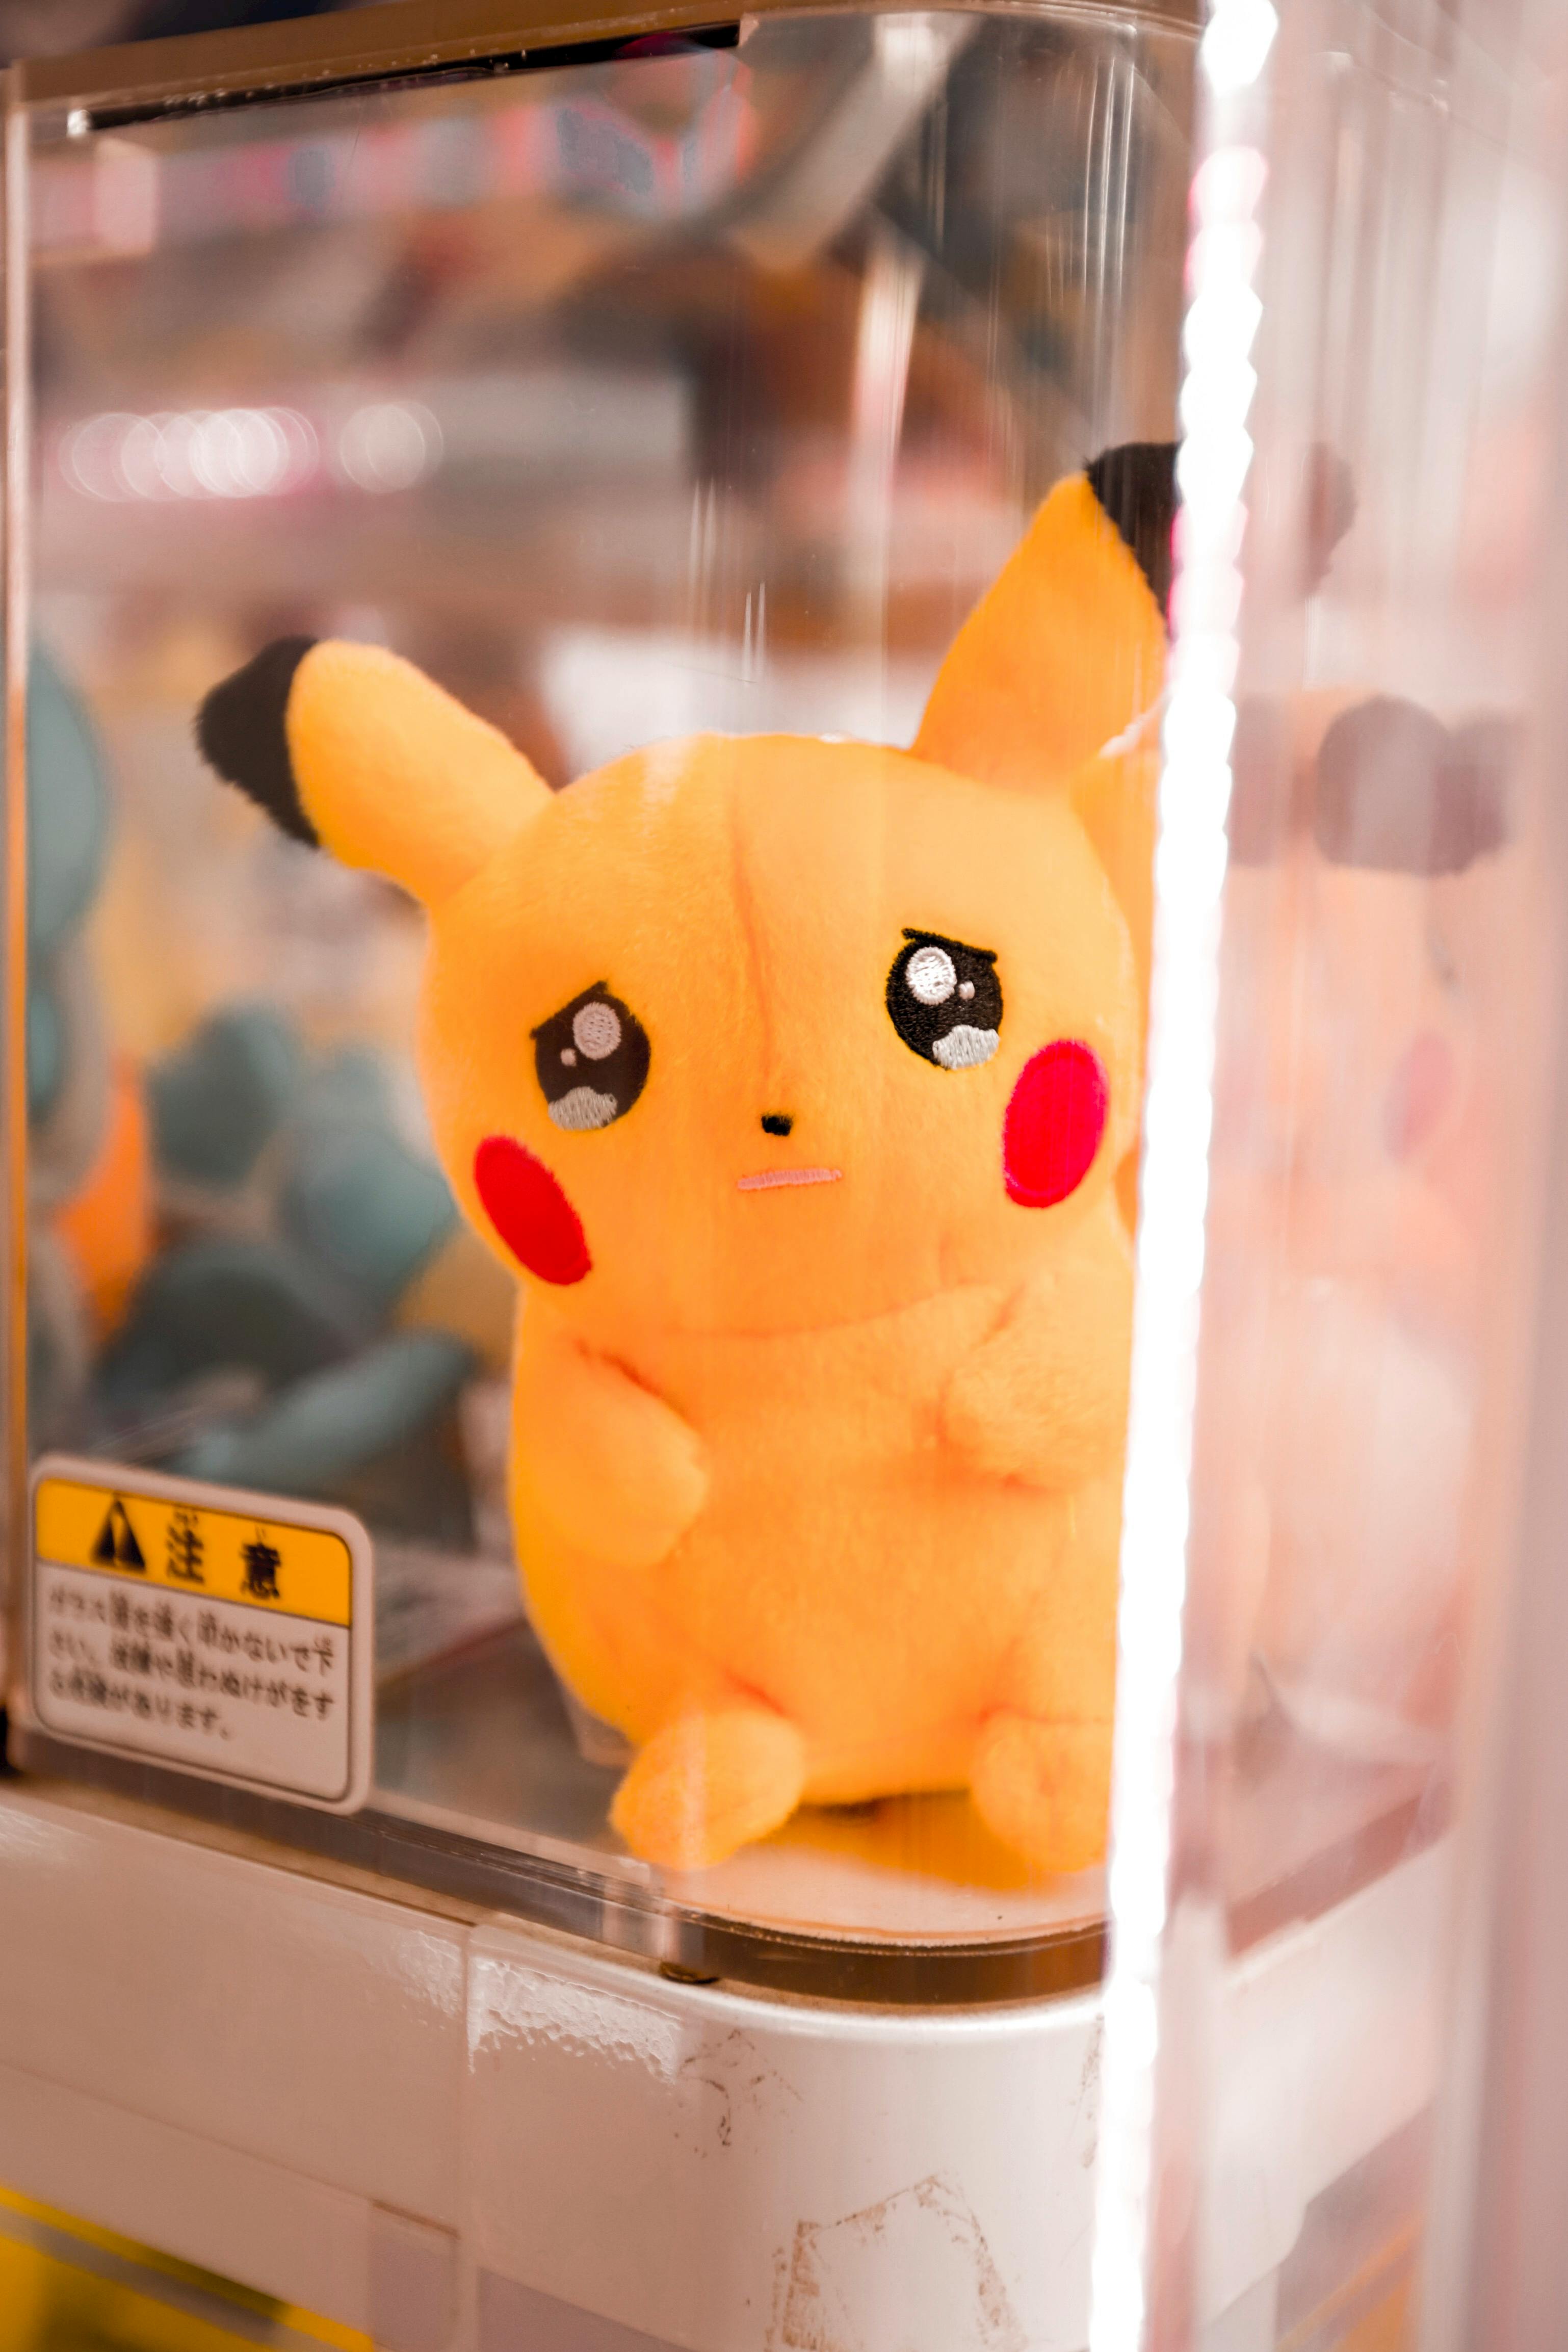 A Close-Up Shot of a Sad Pikachu Stuffed Toy · Free Stock Photo